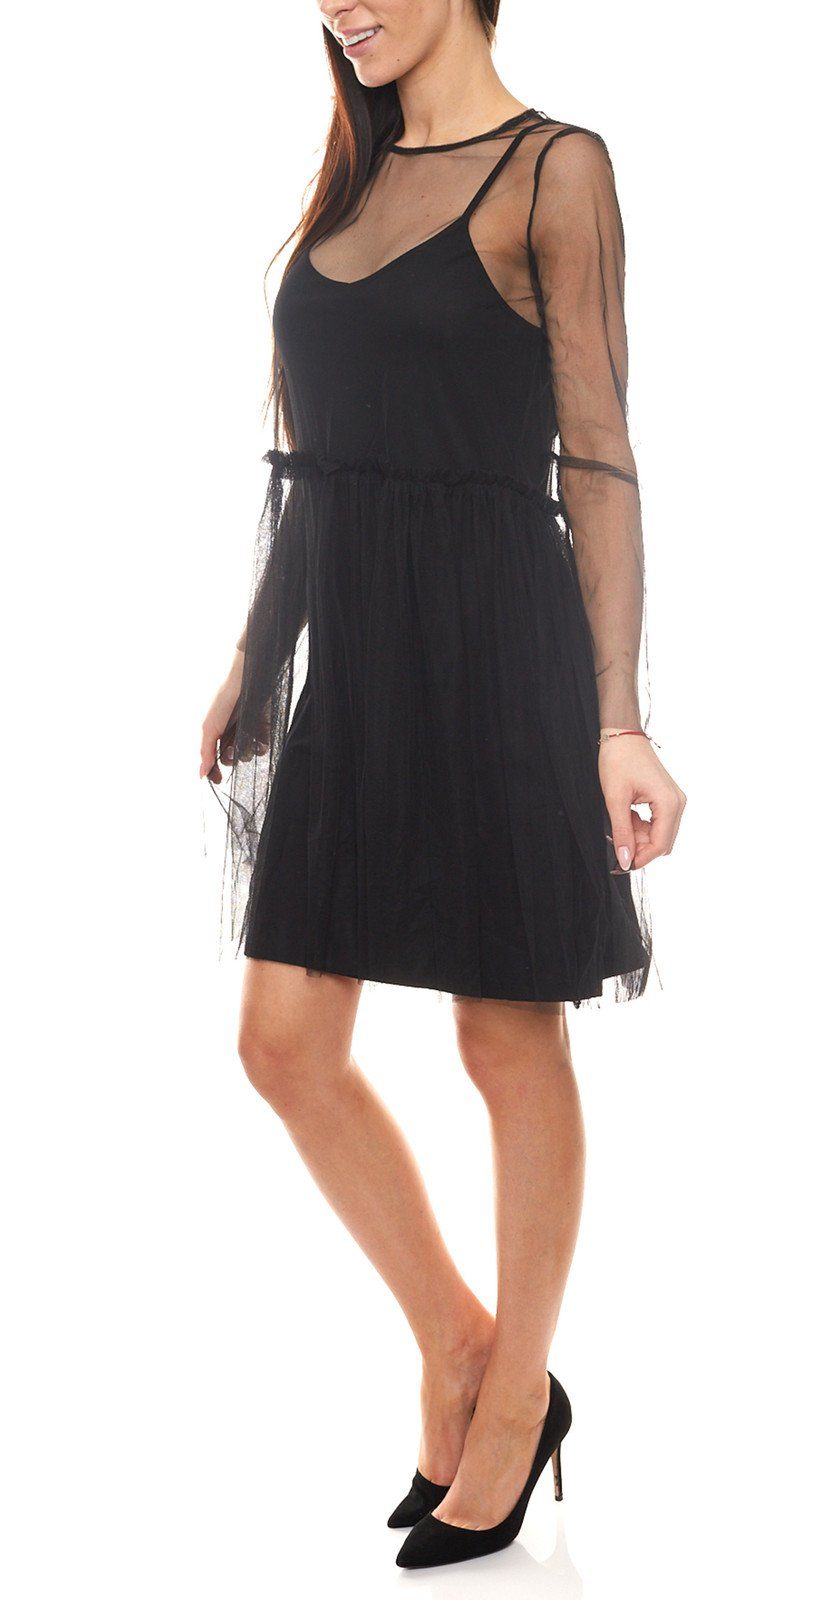 minimum Minikleid Freizeit-Kleid teilweise transparentes Schwarz Damen minimum Kleid Lagen-Look im Mini-Kleid